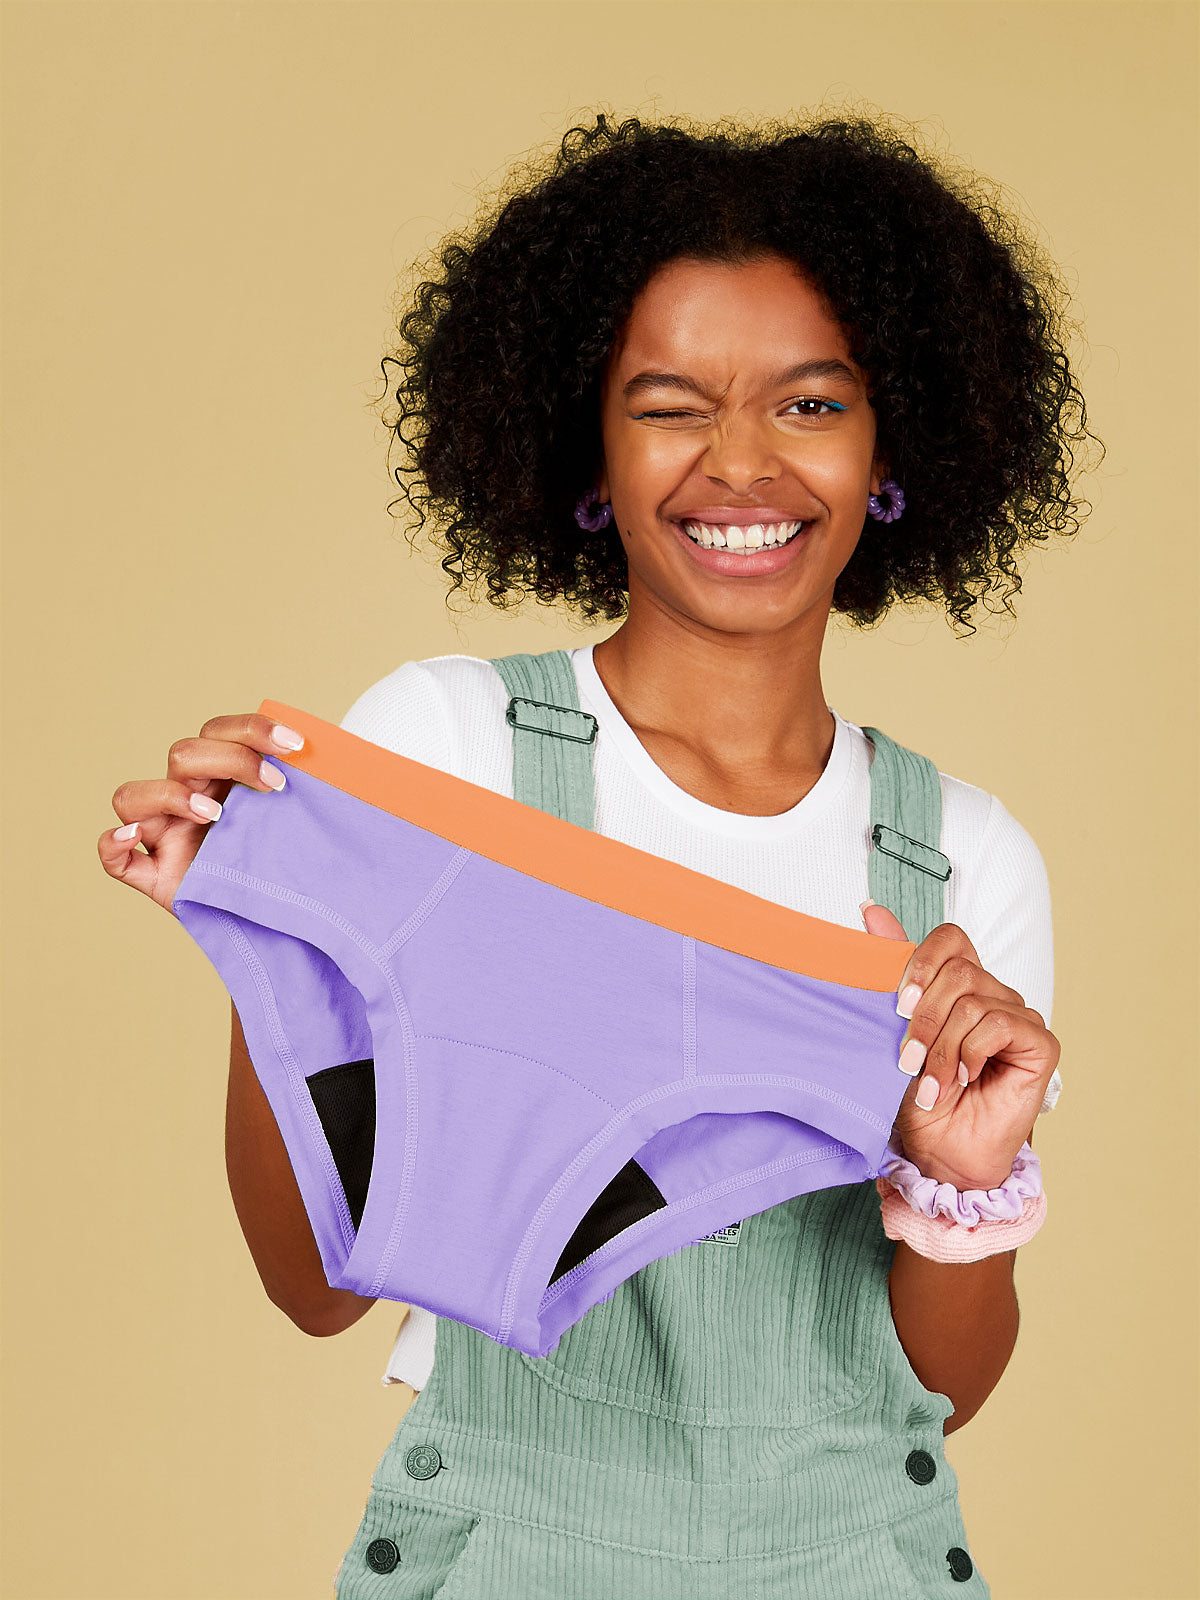 Shop Period Underwear for teens